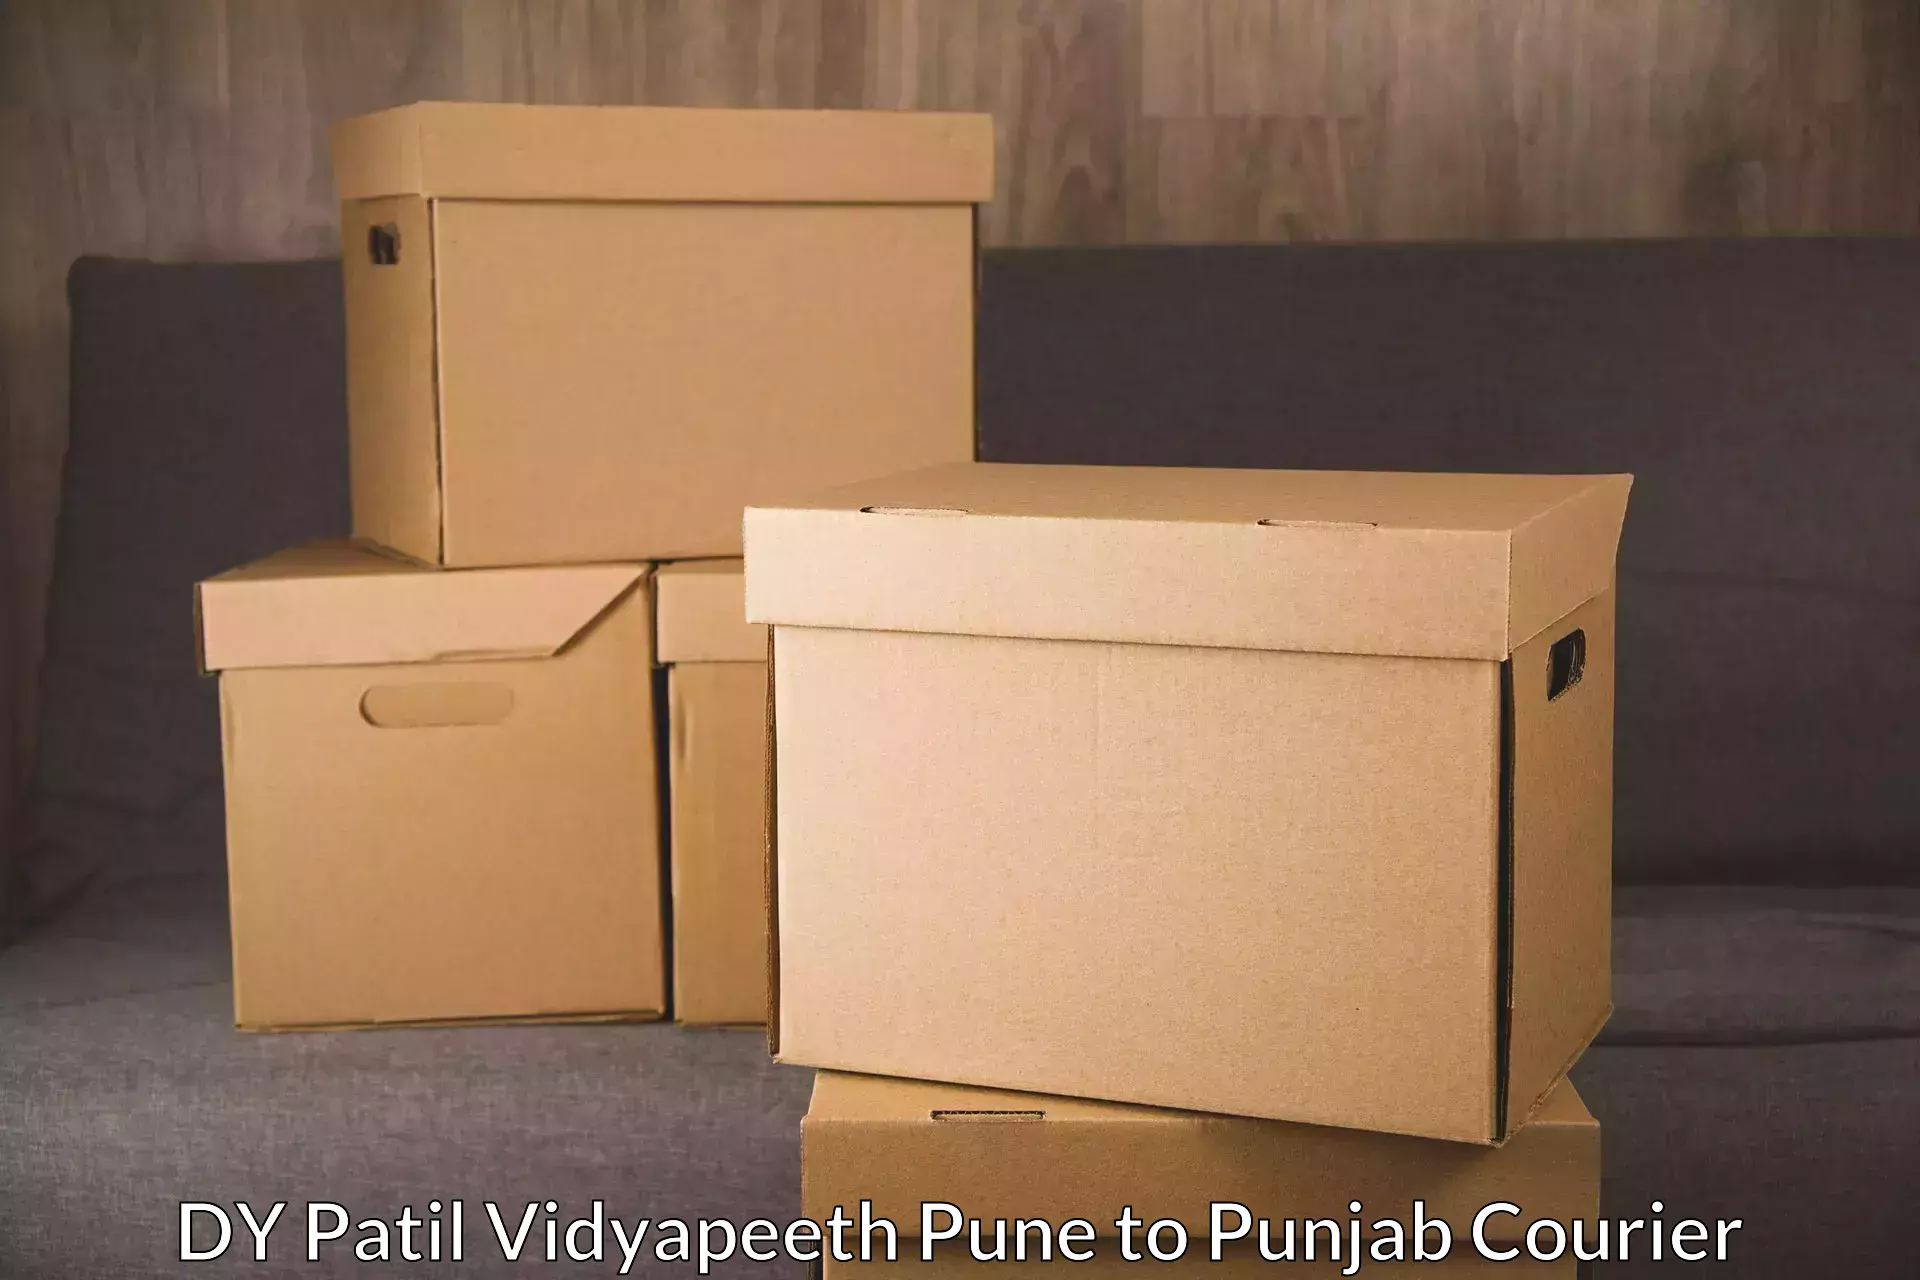 Efficient parcel service DY Patil Vidyapeeth Pune to Khanna